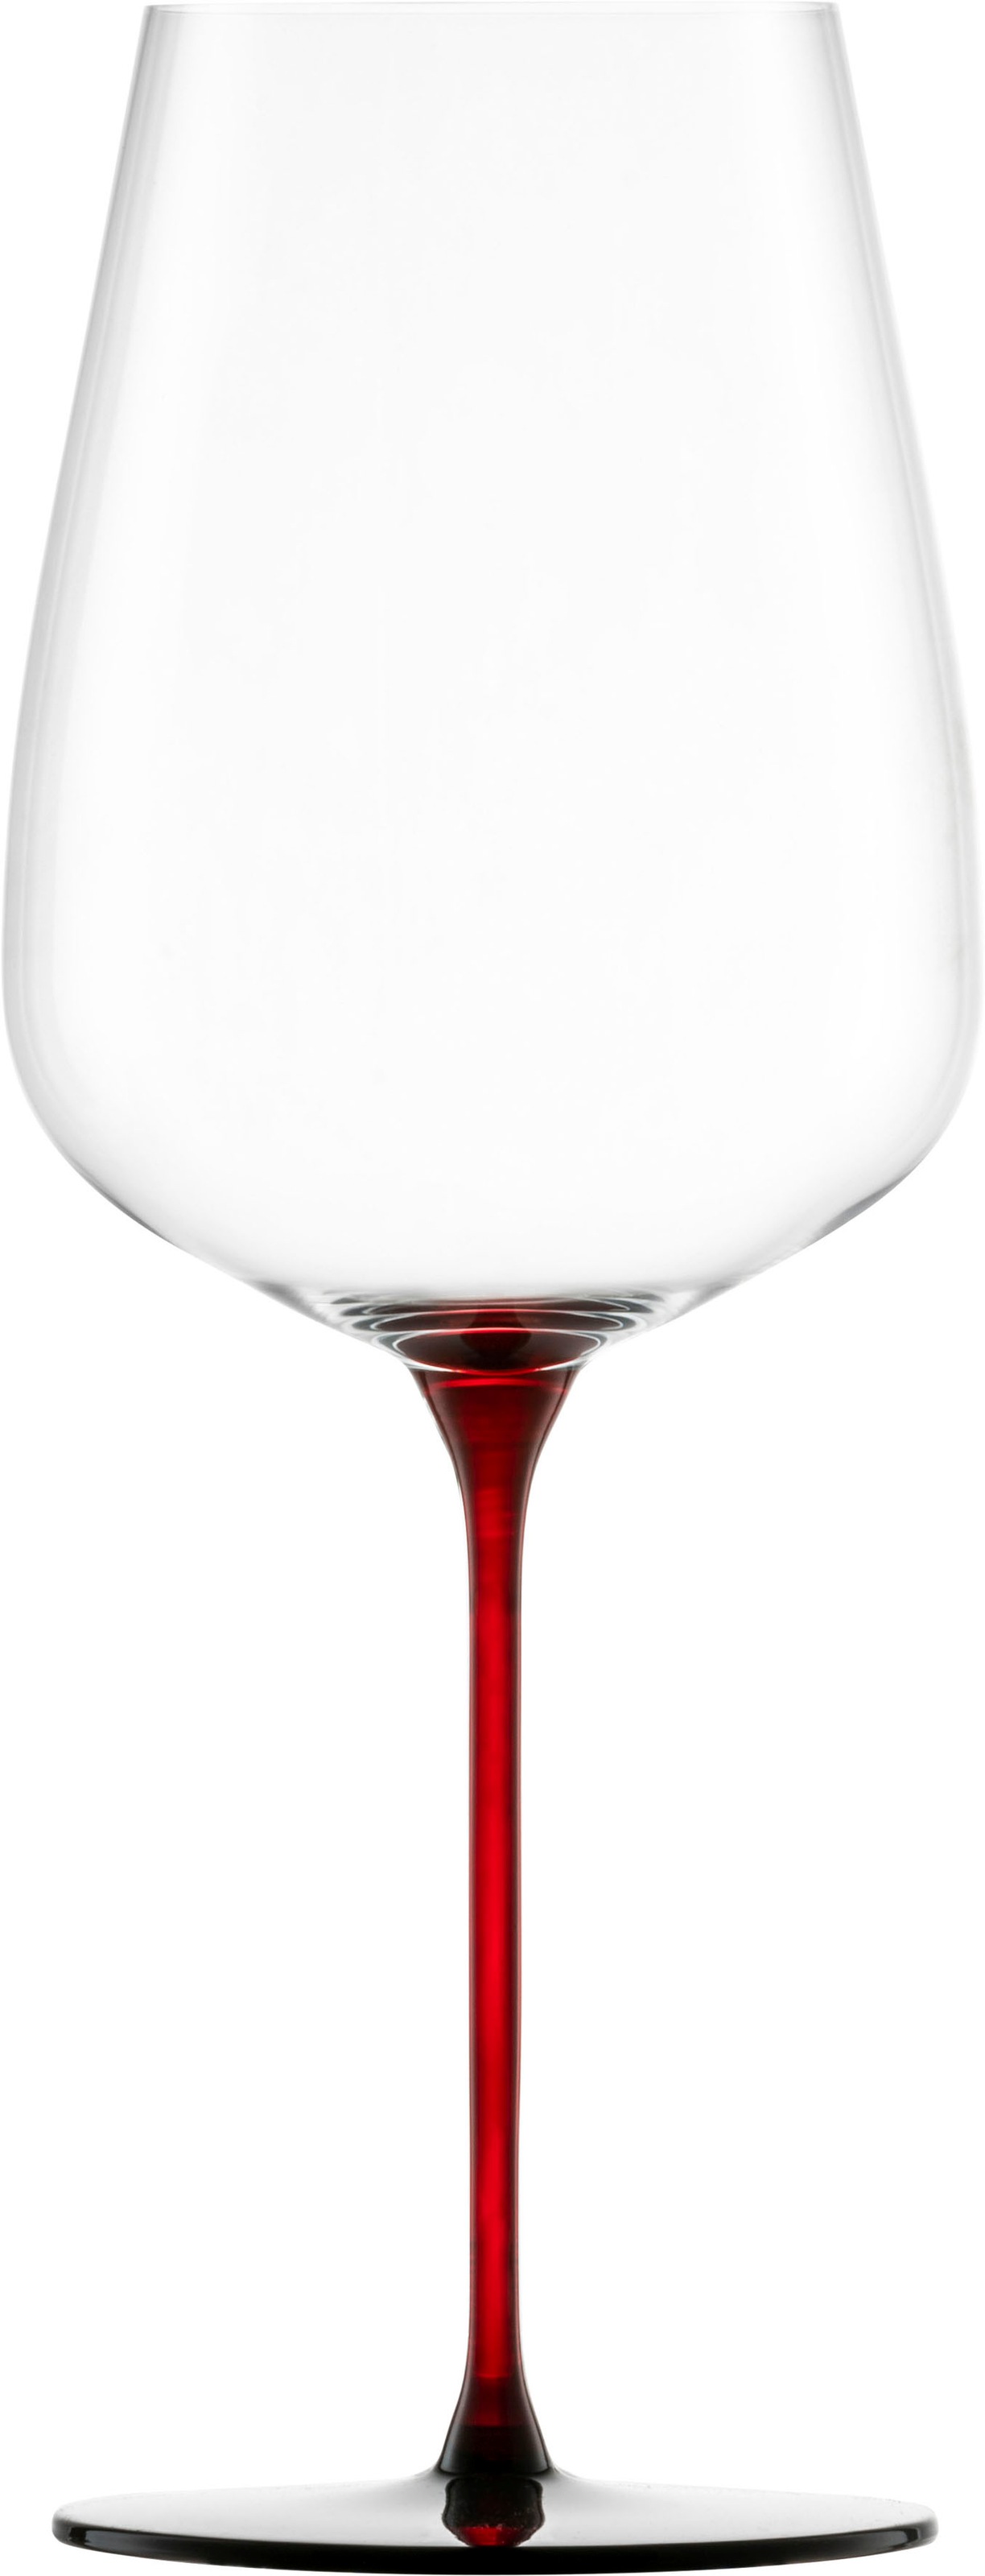 Eisch Weinglas »RED SENSISPLUS«, (Set, 2 tlg., 2 Gläser im Geschenkkarton), 740 ml, Handarbeit, 2-teilig, Made in Germany